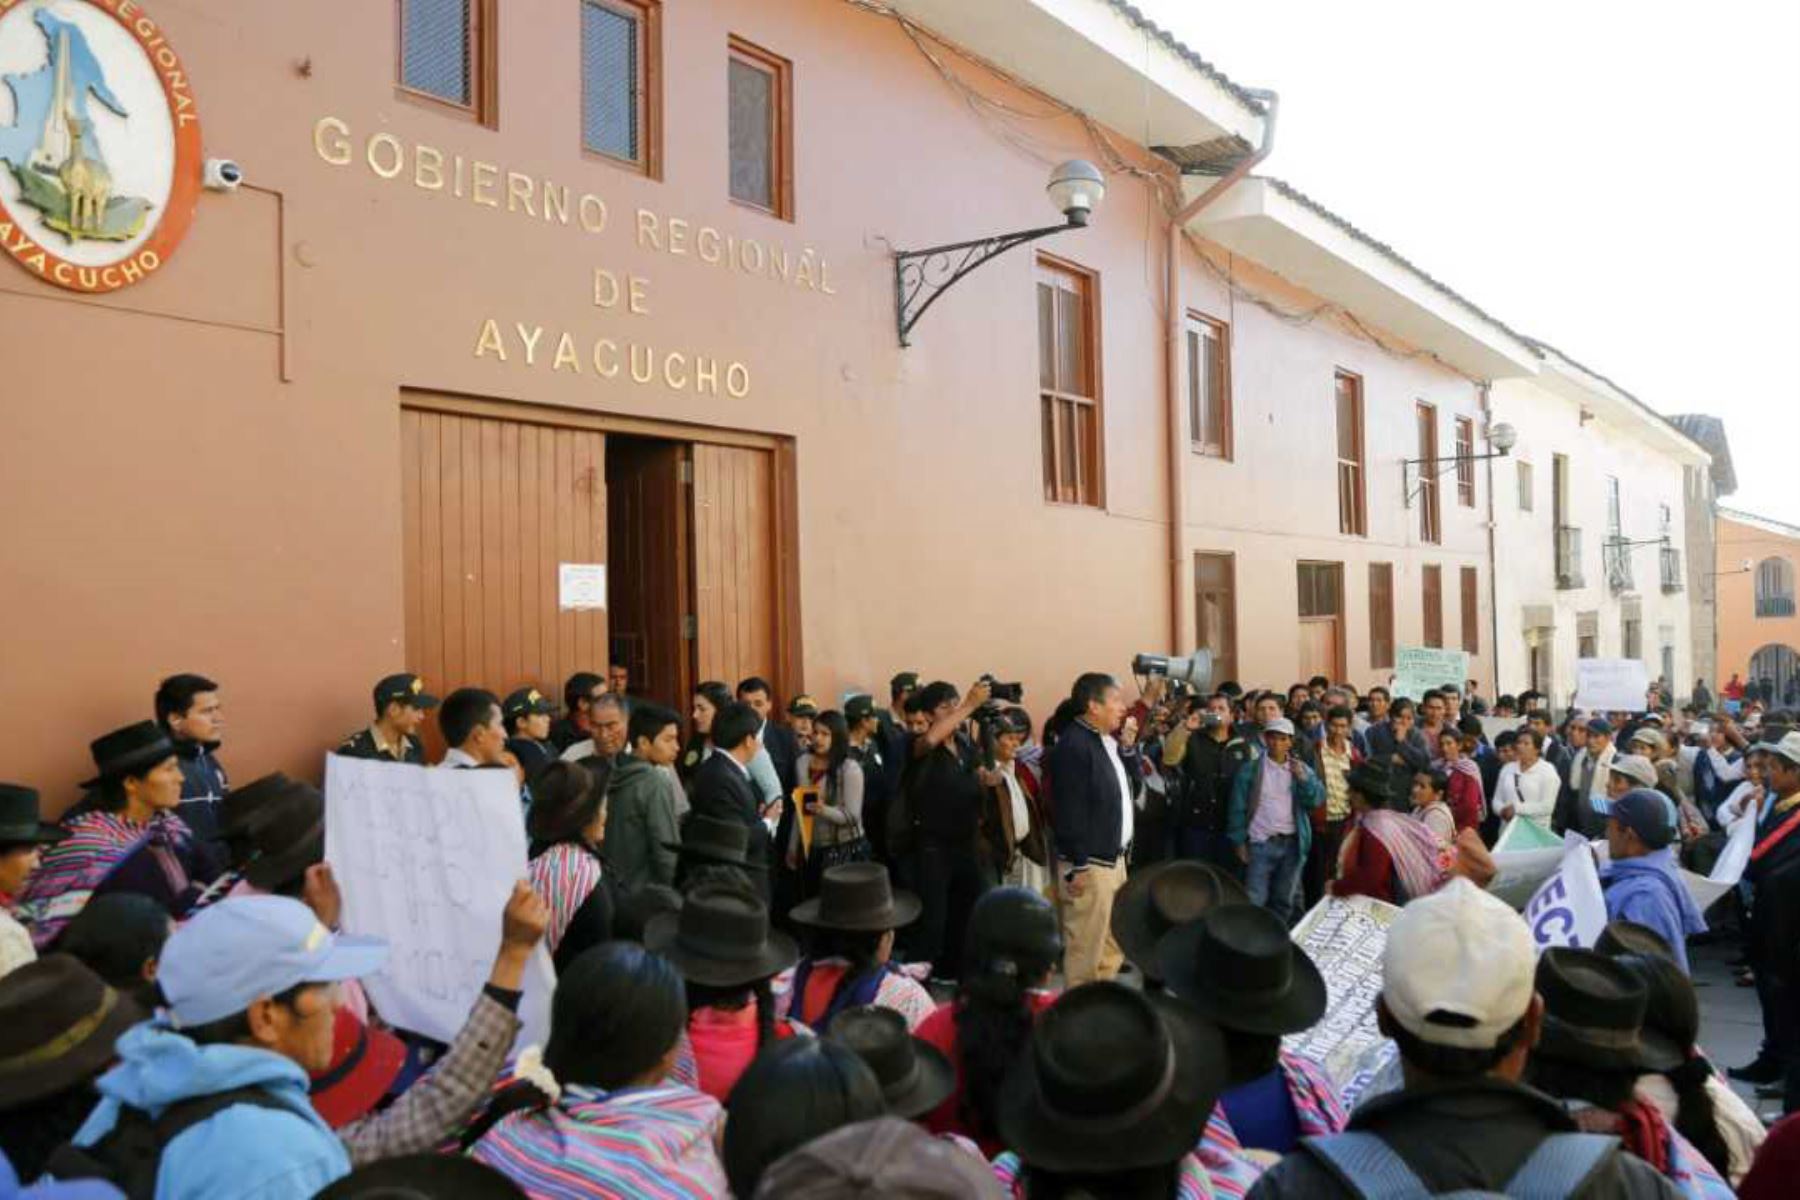 El gobernador regional de Ayacucho, Wilfredo Oscorima Núñez, recibió en el auditorio del Gobierno Regional a pobladores de la provincia de Huanta y 28 dirigentes del proyecto de riego “Esmeralda Alta”, quienes demandan el inicio de dicho proyecto.